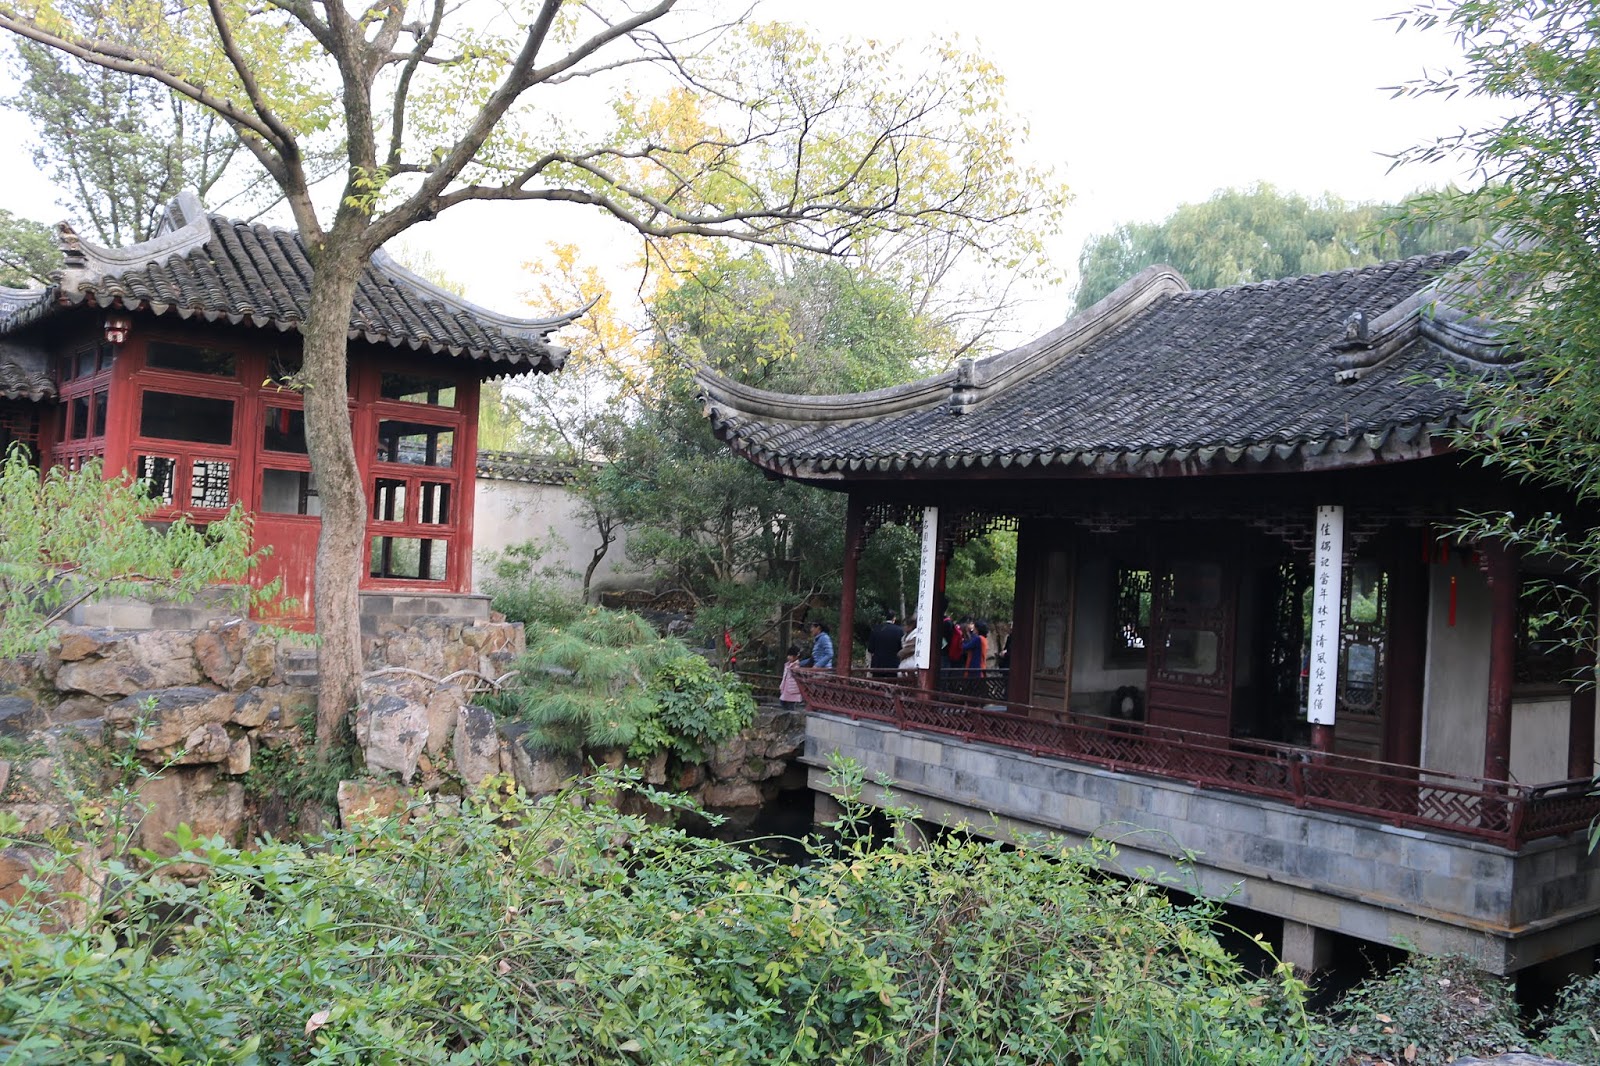 Couple's Garden (Lotus Garden) Suzhou